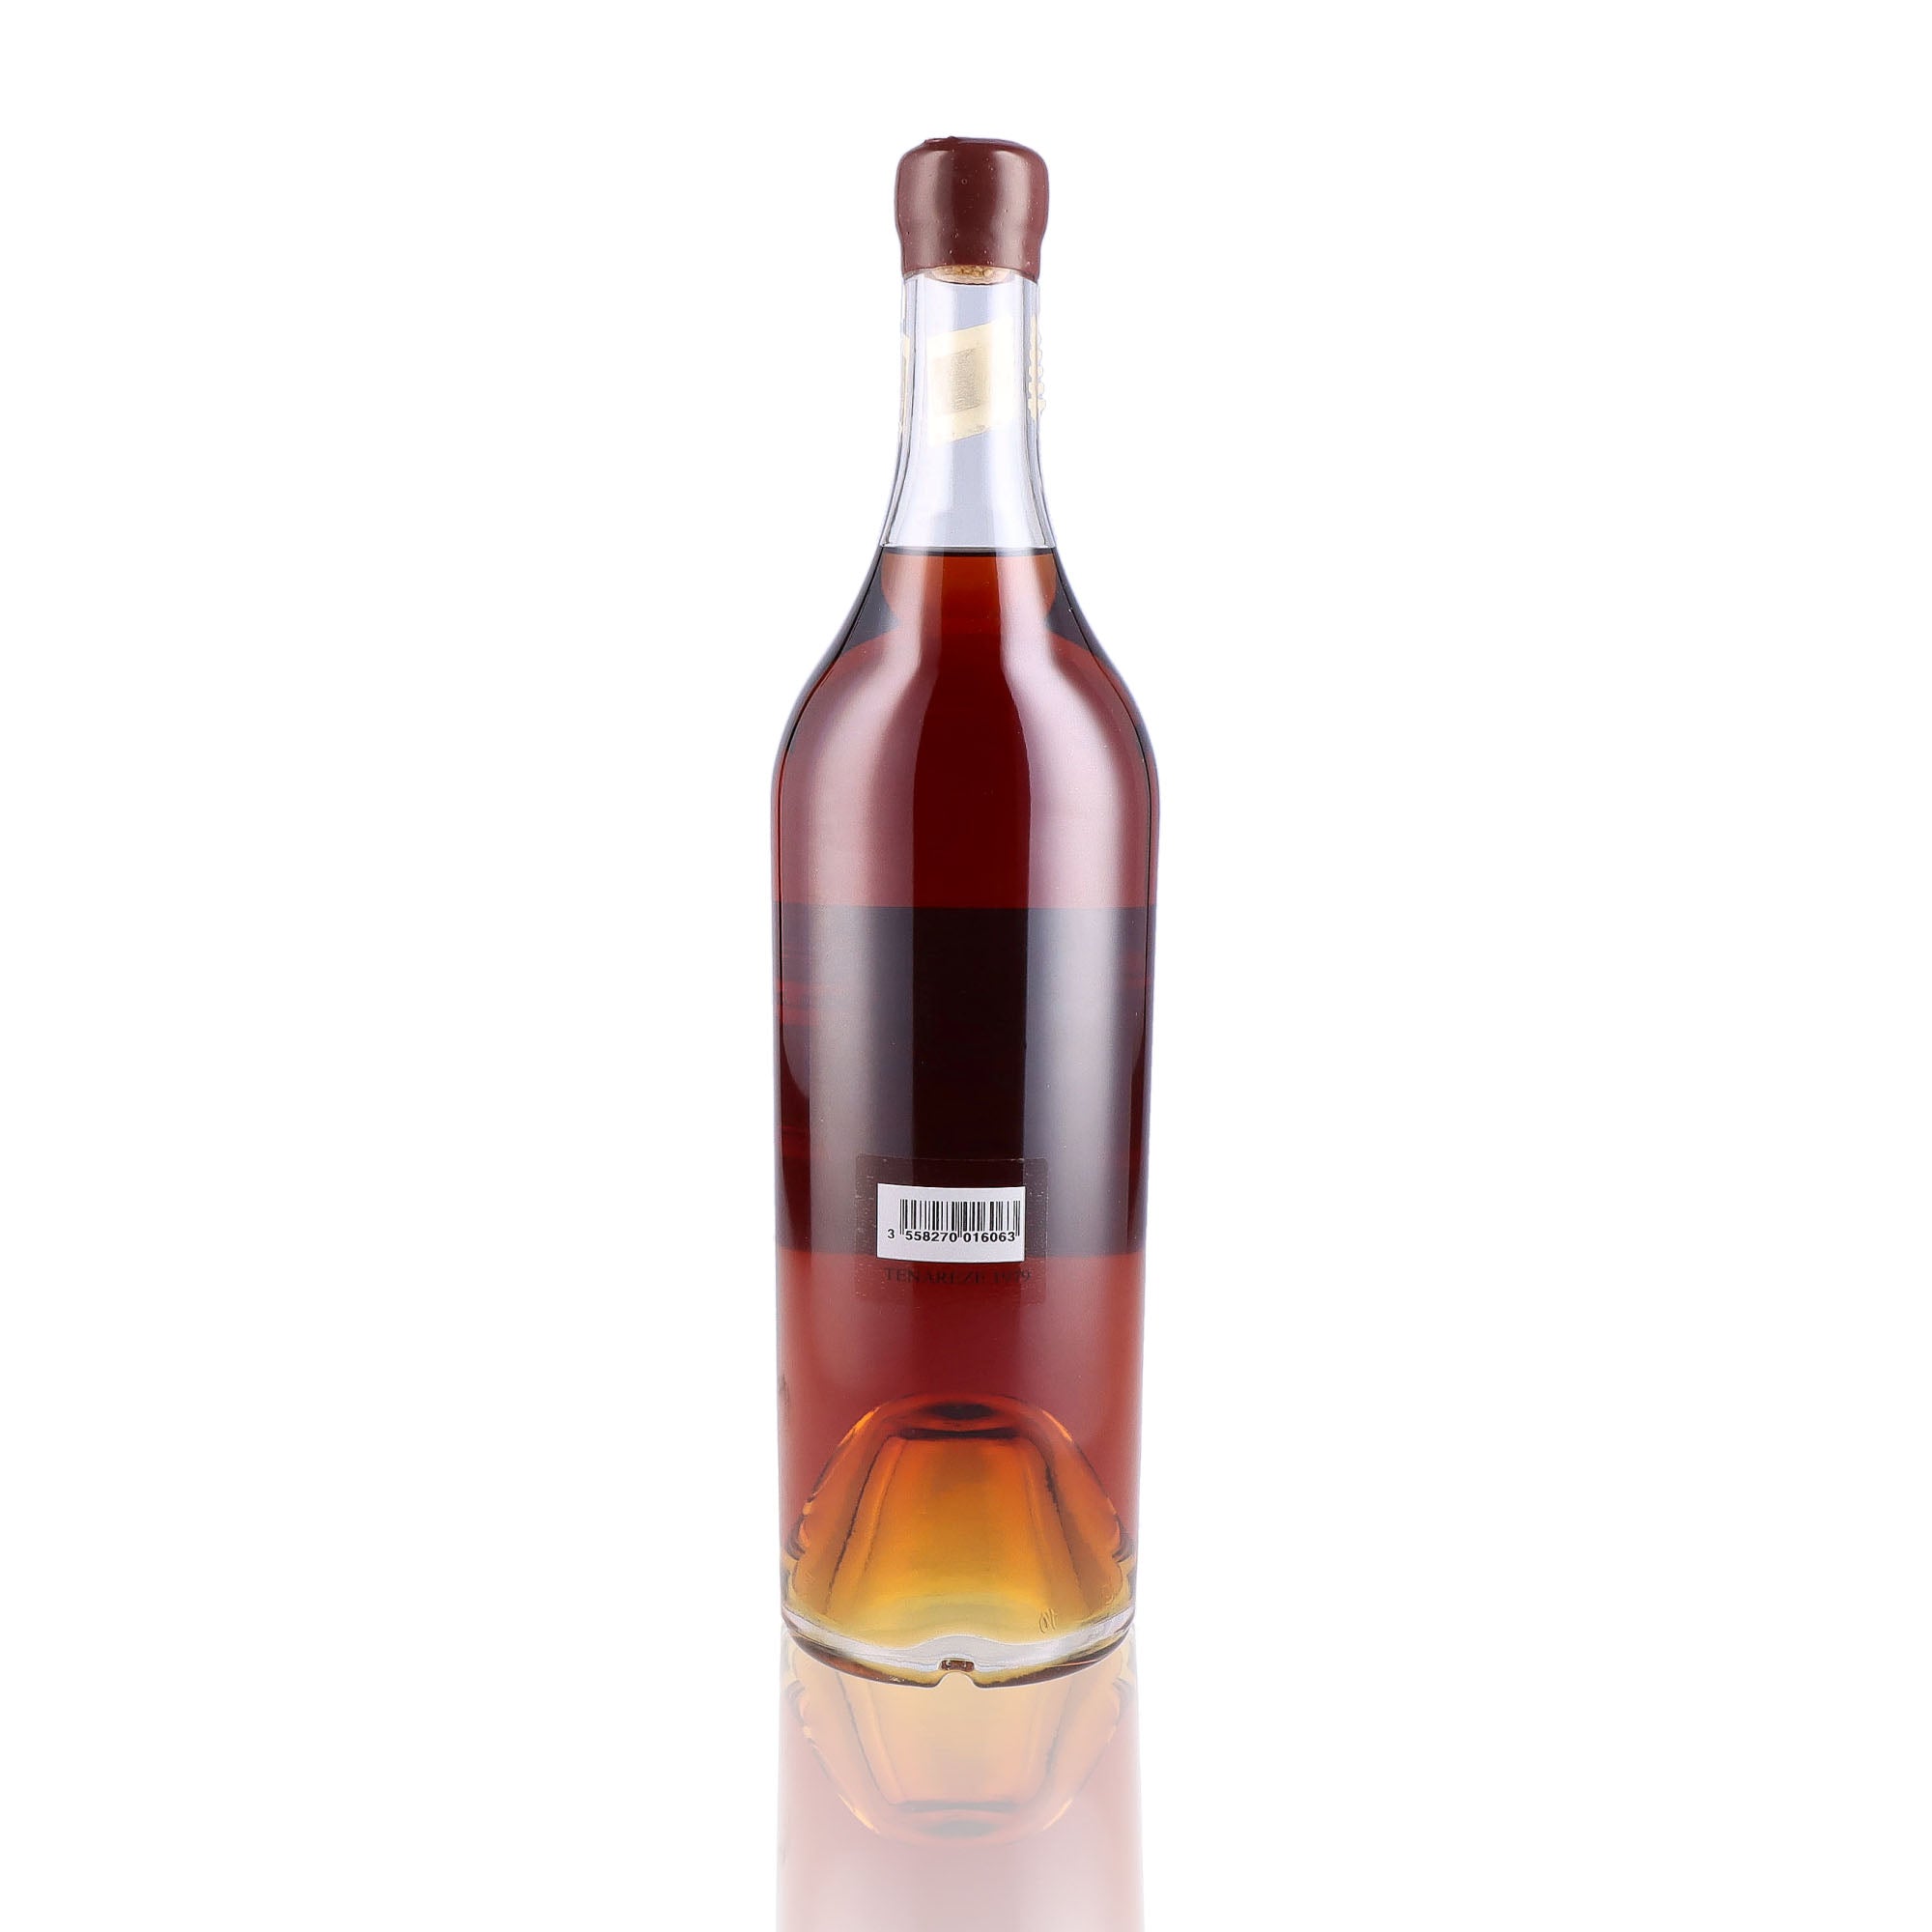 Une bouteille d'Armagnac de Ténarèze, de la marque Baron Gaston Legrand, du millésime 1980.